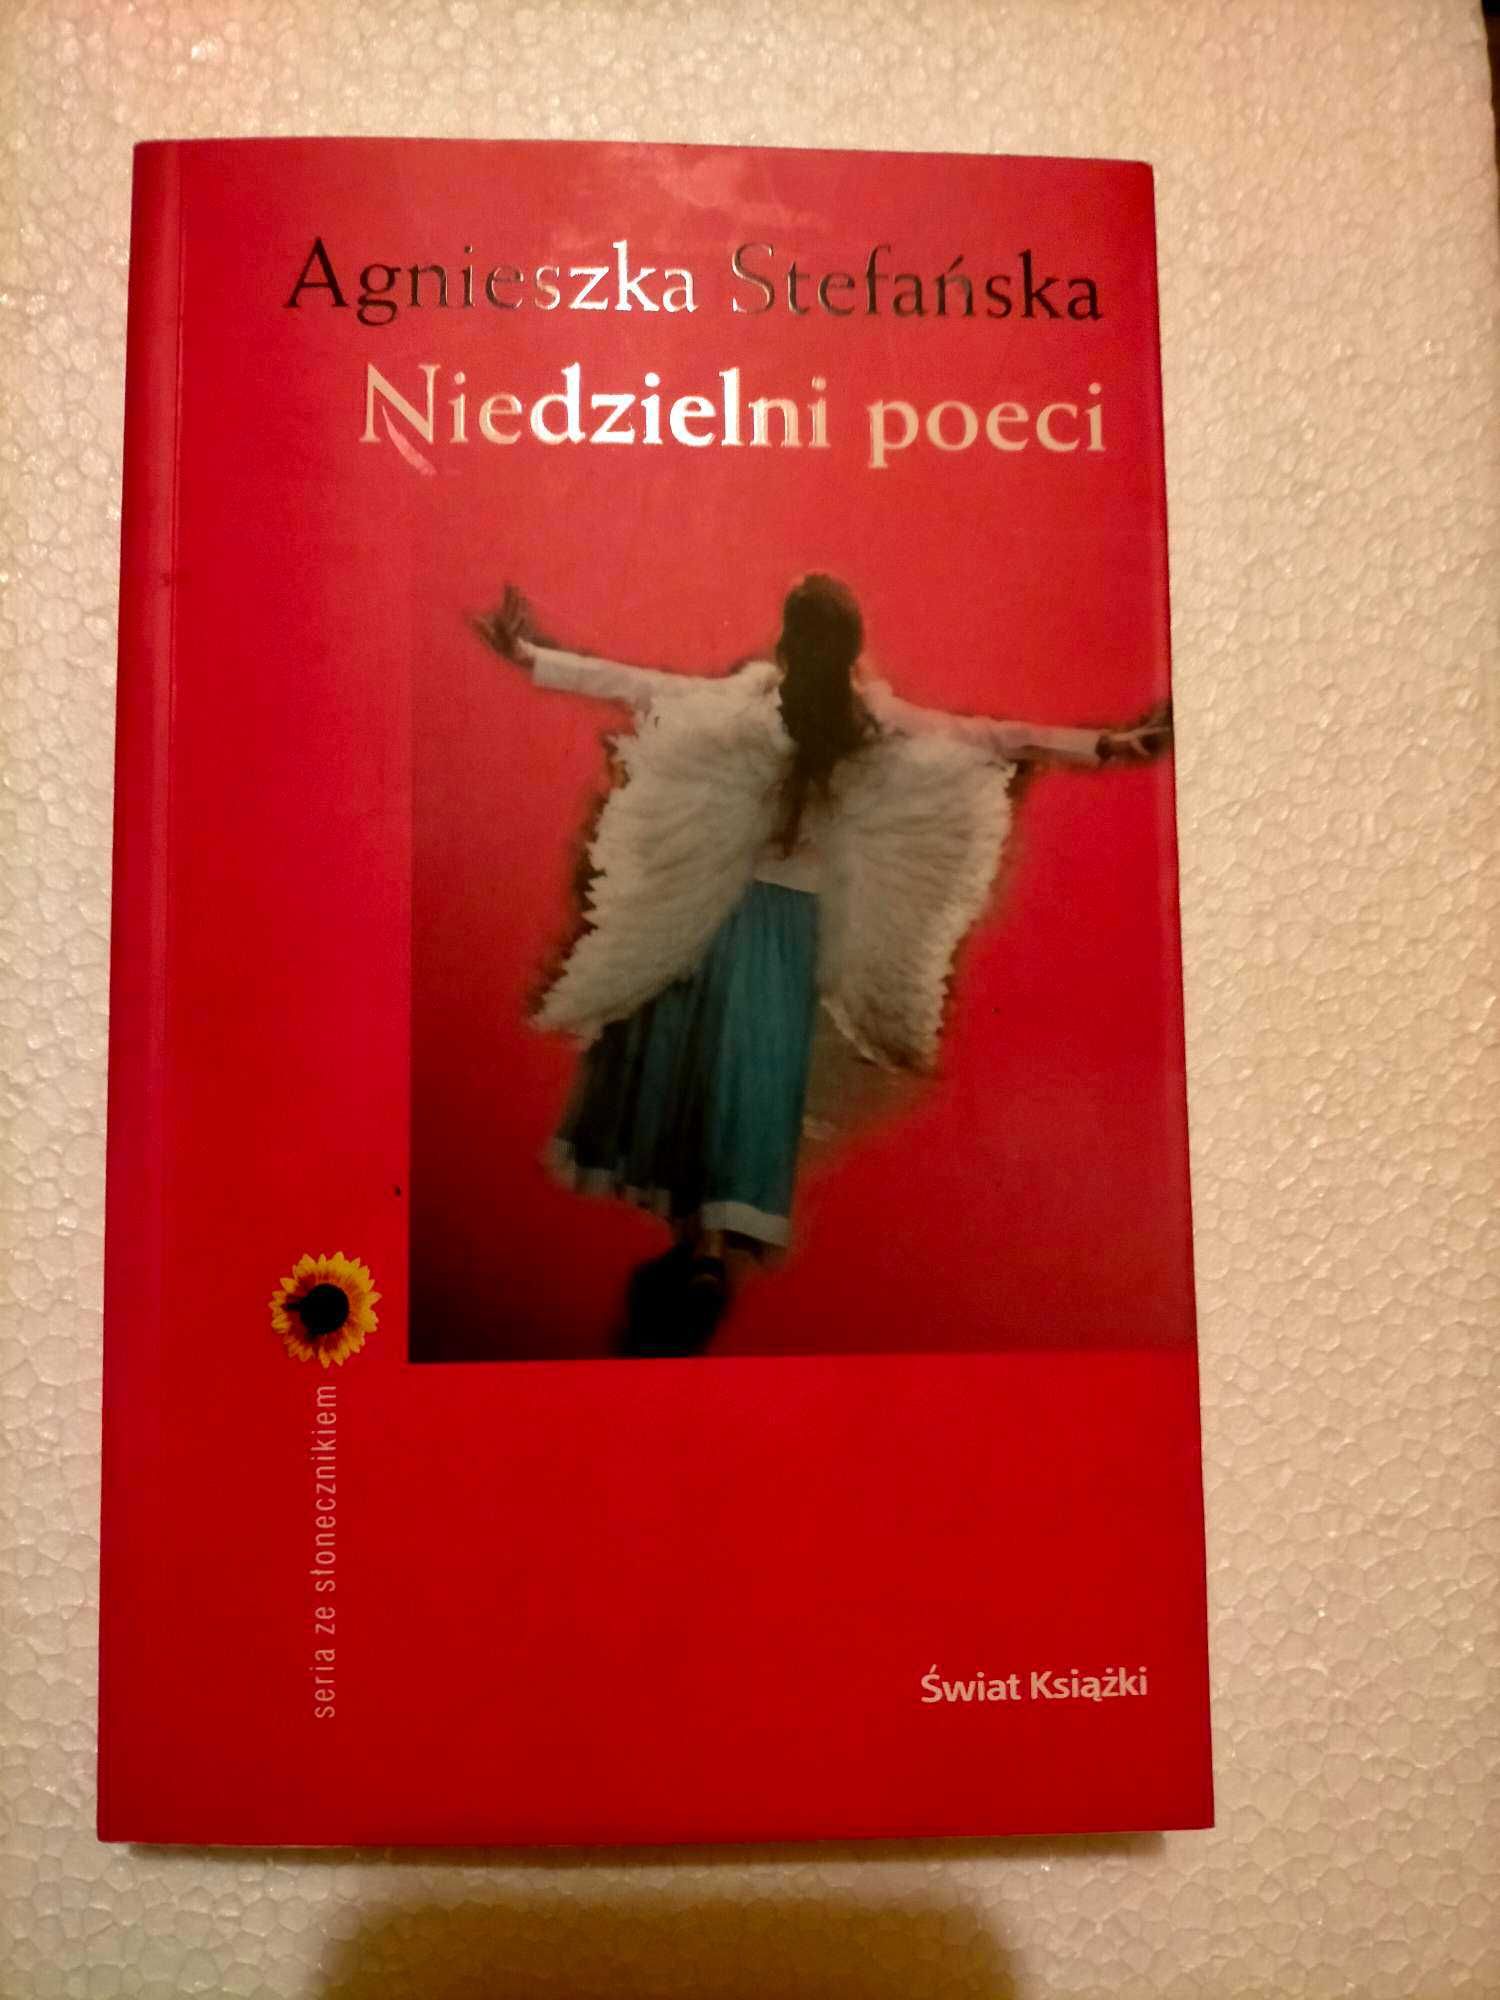 " Niedzielni poeci "-  Agnieszka Stefańska - książka.